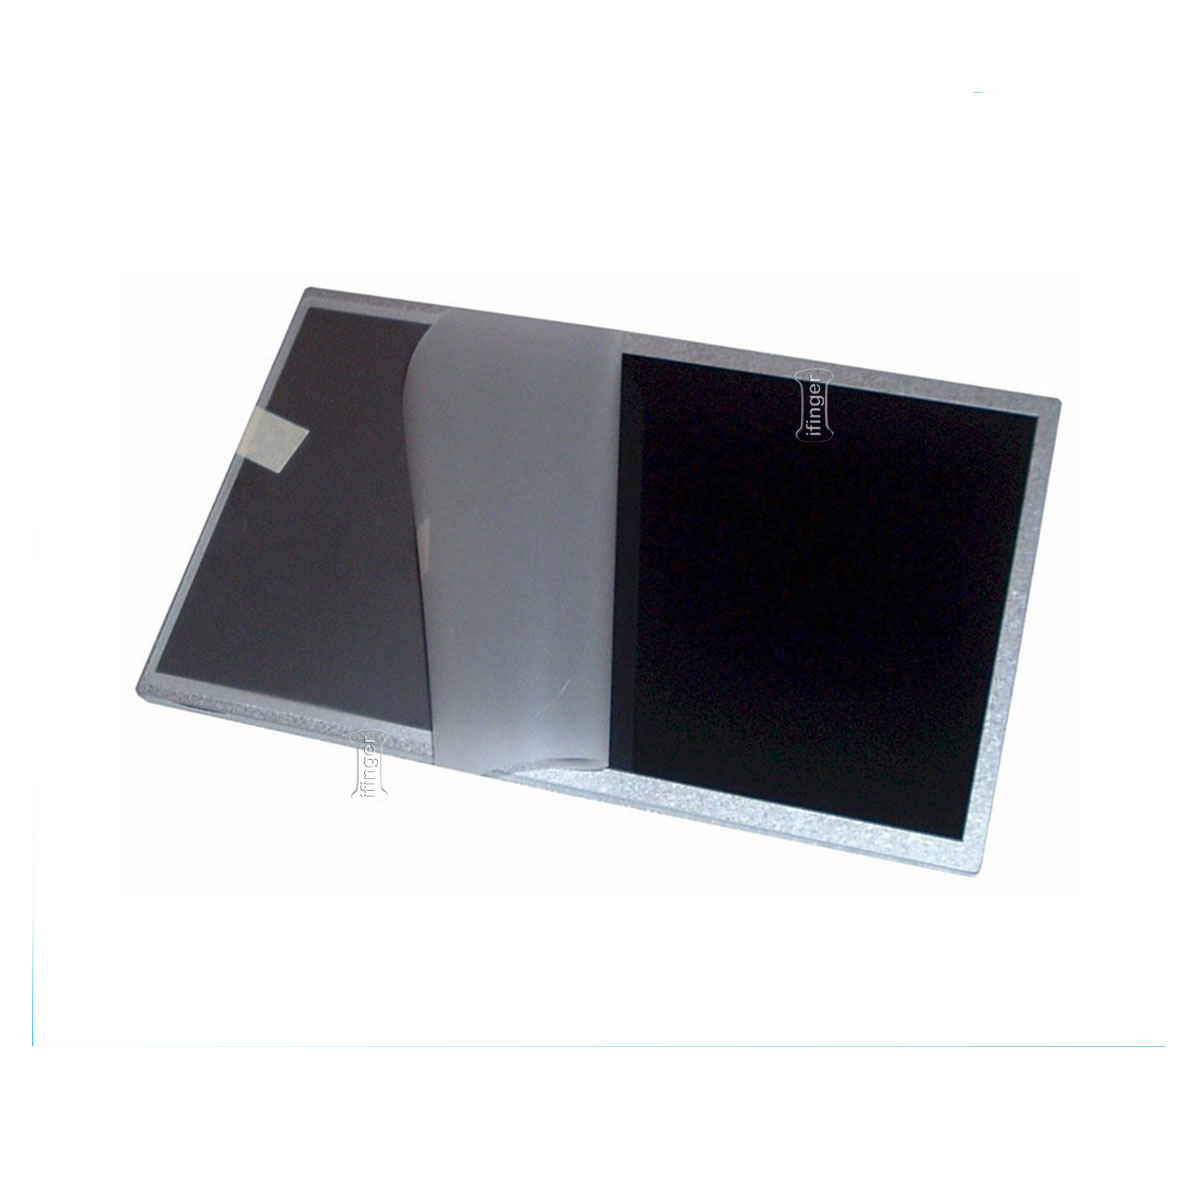 Pantalla portatil Nueva Samsung N Series NP-N140 Plus 10.1 LED mate NP140 rep...